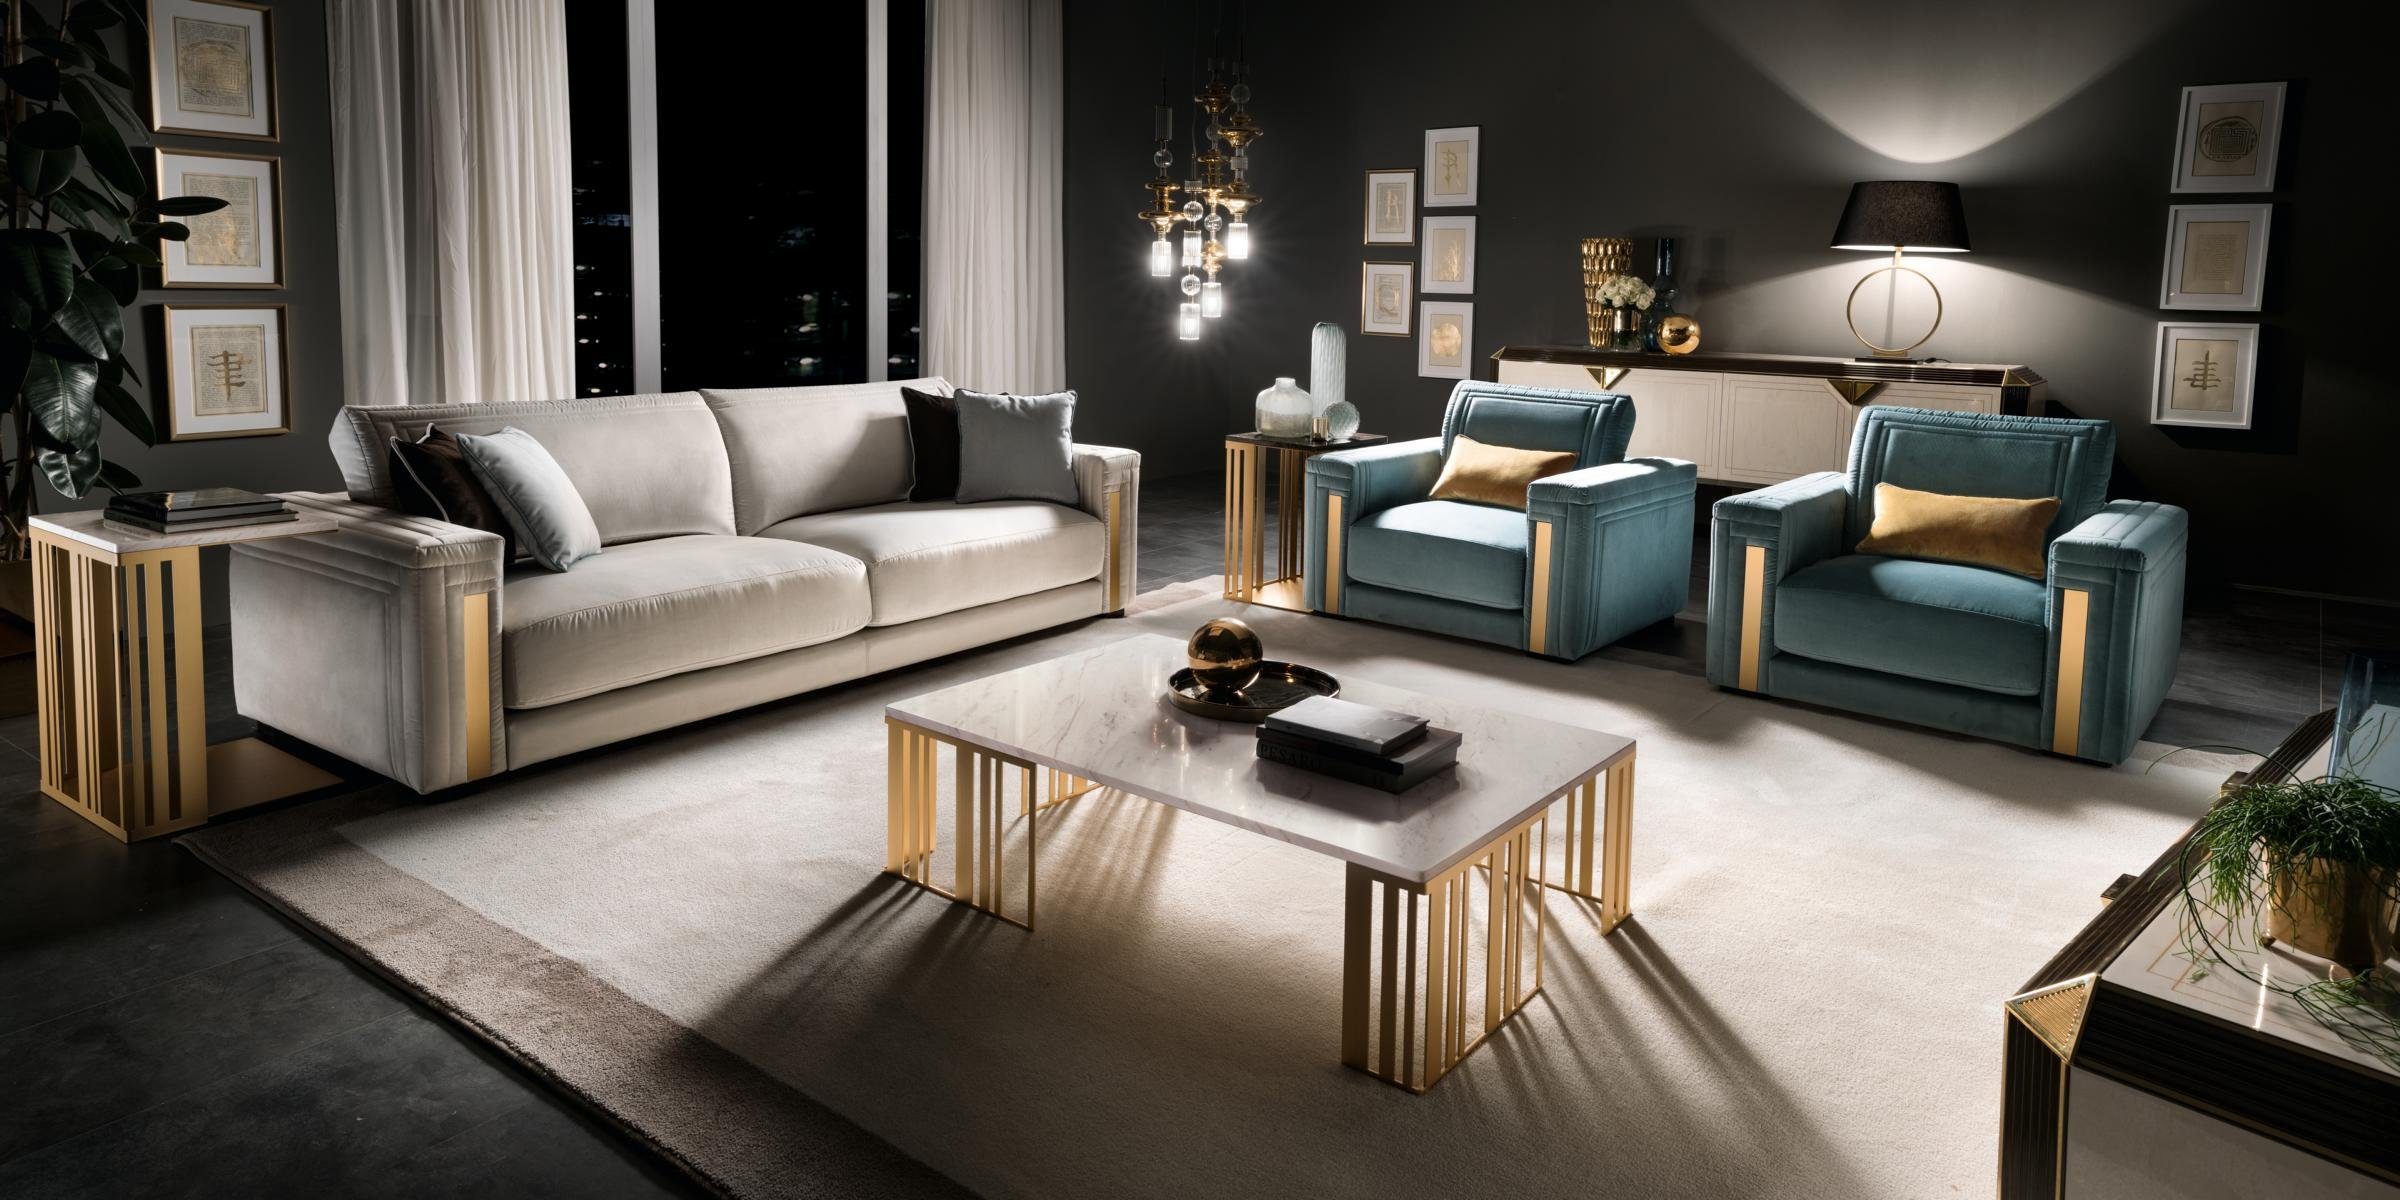 JVmoebel Wohnzimmer-Set Sofagarnitur 31 Sitzer Set Design Sofa Polster Couchen Couch Luxus arredoclassic